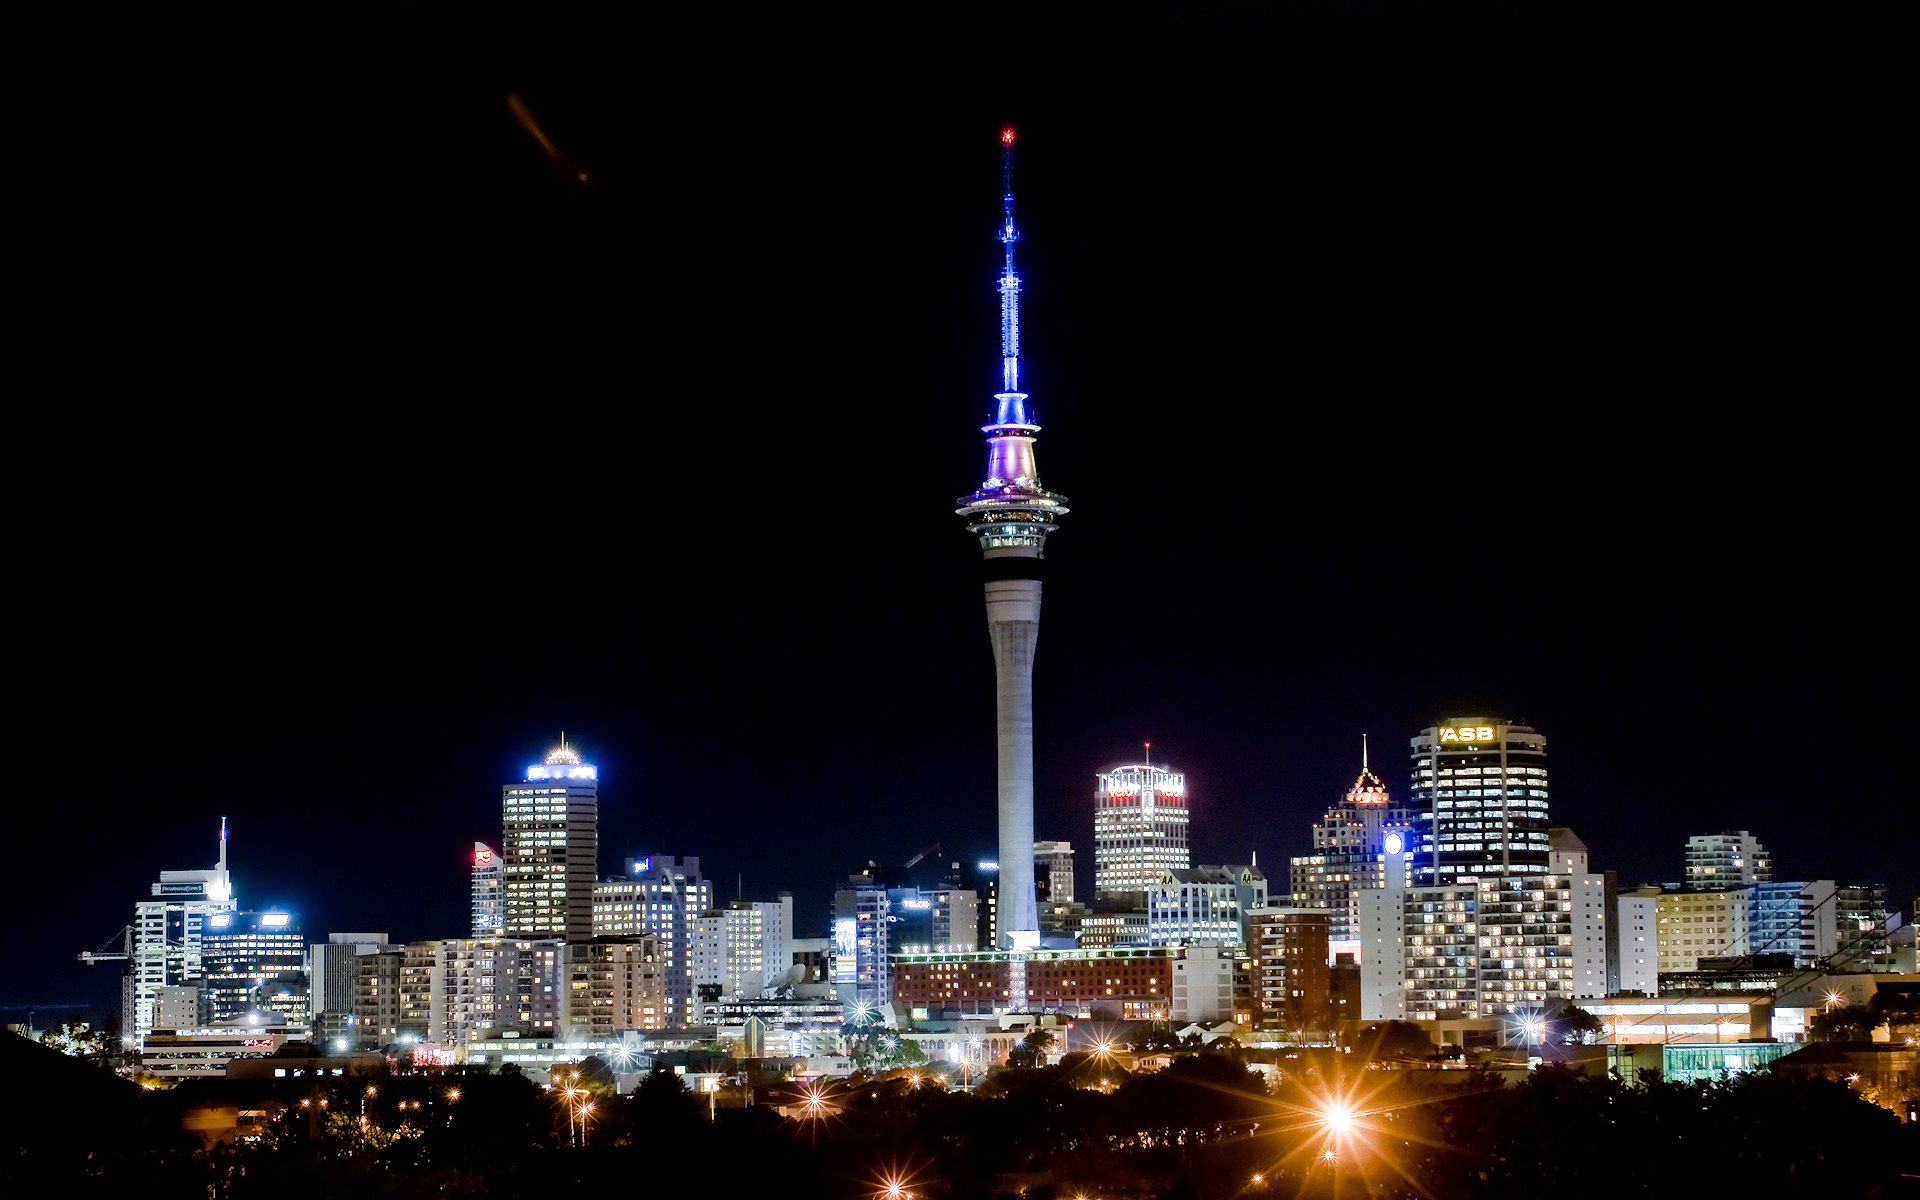 Hình nền Auckland Sky Tower sẽ mang đến cho bạn cảm giác như đang đứng ngay dưới chân tòa tháp cao nhất New Zealand. Khung cảnh lộng lẫy cùng sắc đỏ rực rỡ của tòa tháp sẽ phản ánh tinh thần chinh phục đỉnh cao của bạn trong công việc và cuộc sống.